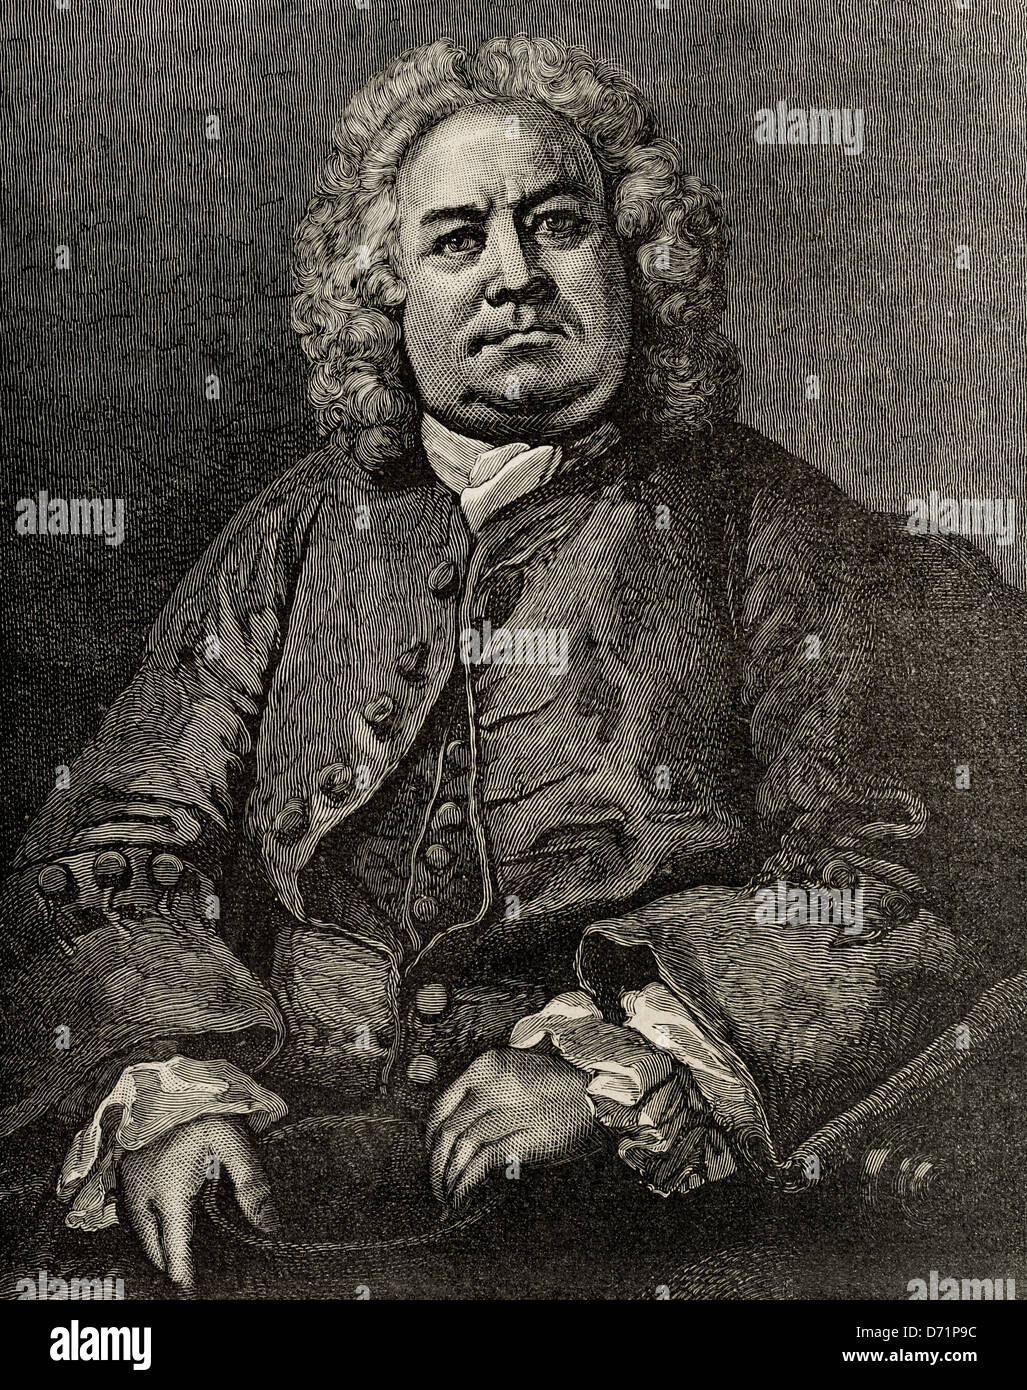 William Hogarth (1697 –1764). Englischer Maler, Grafiker, bildhafte Satiriker und Graveur. Gravur. Stockfoto